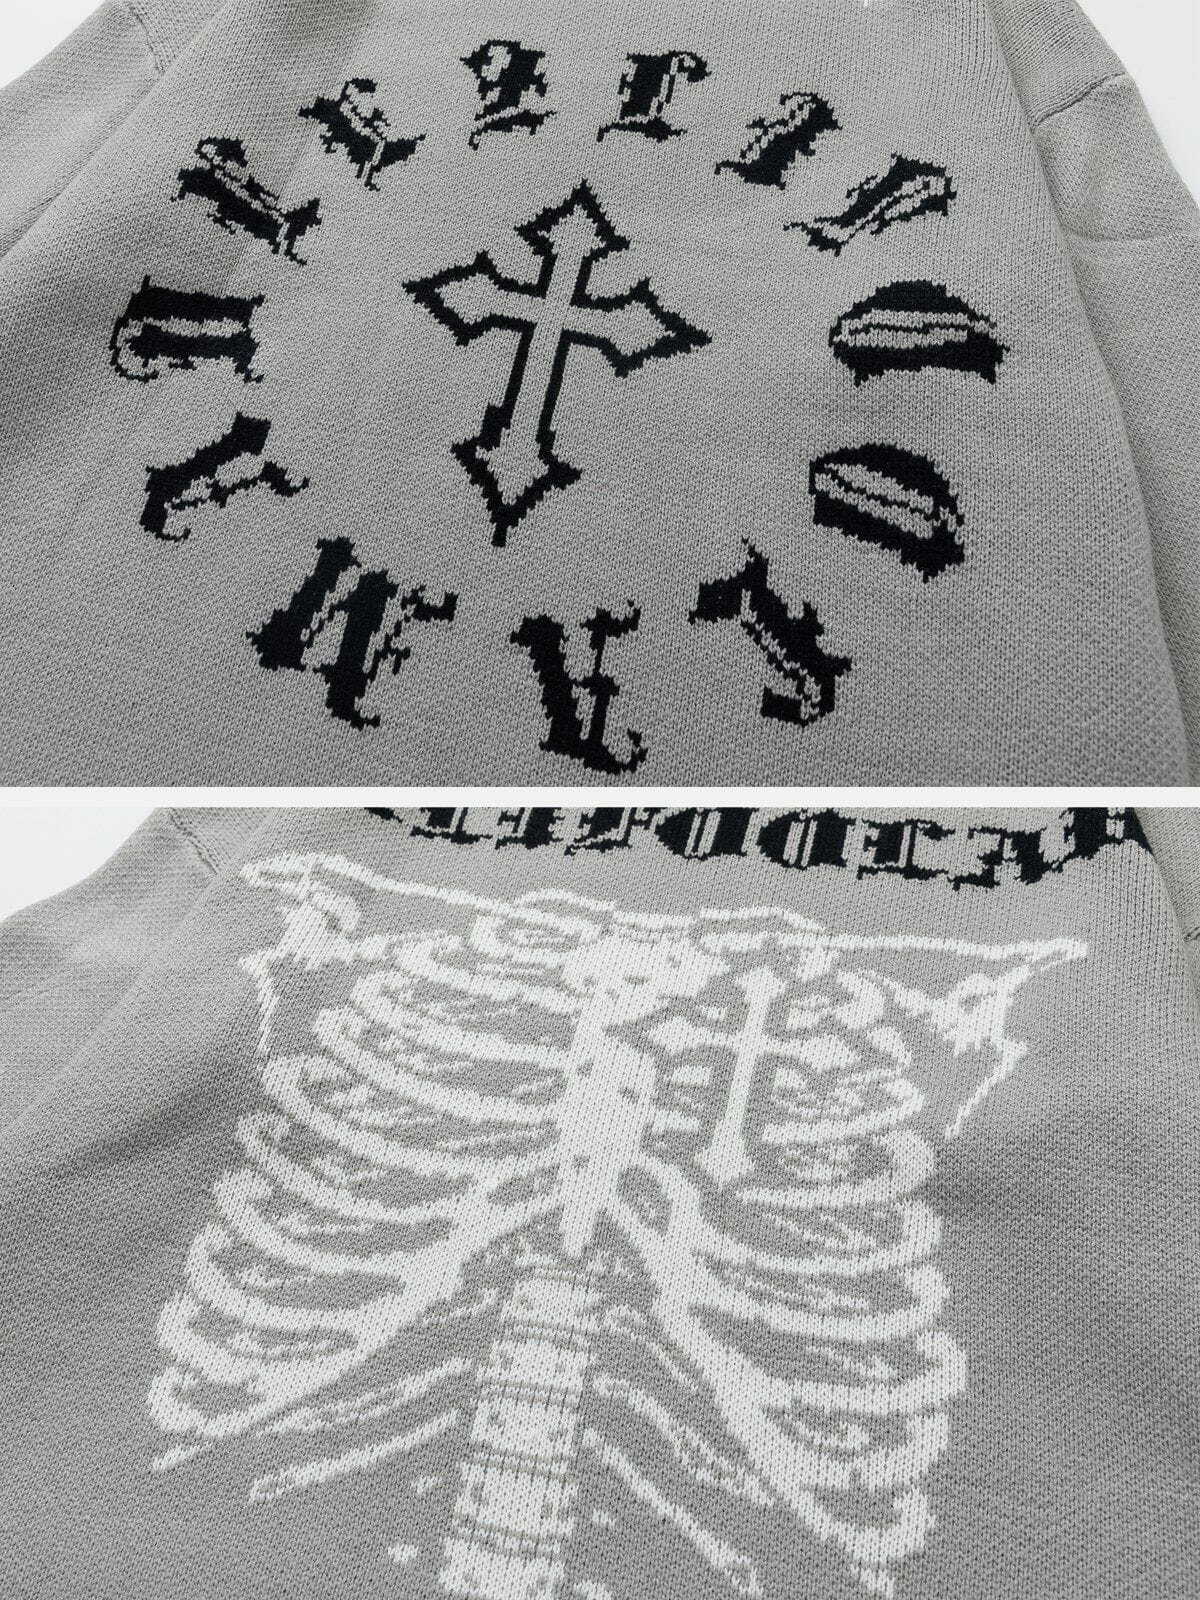 edgy skeleton breakage sweater retro streetwear 3413